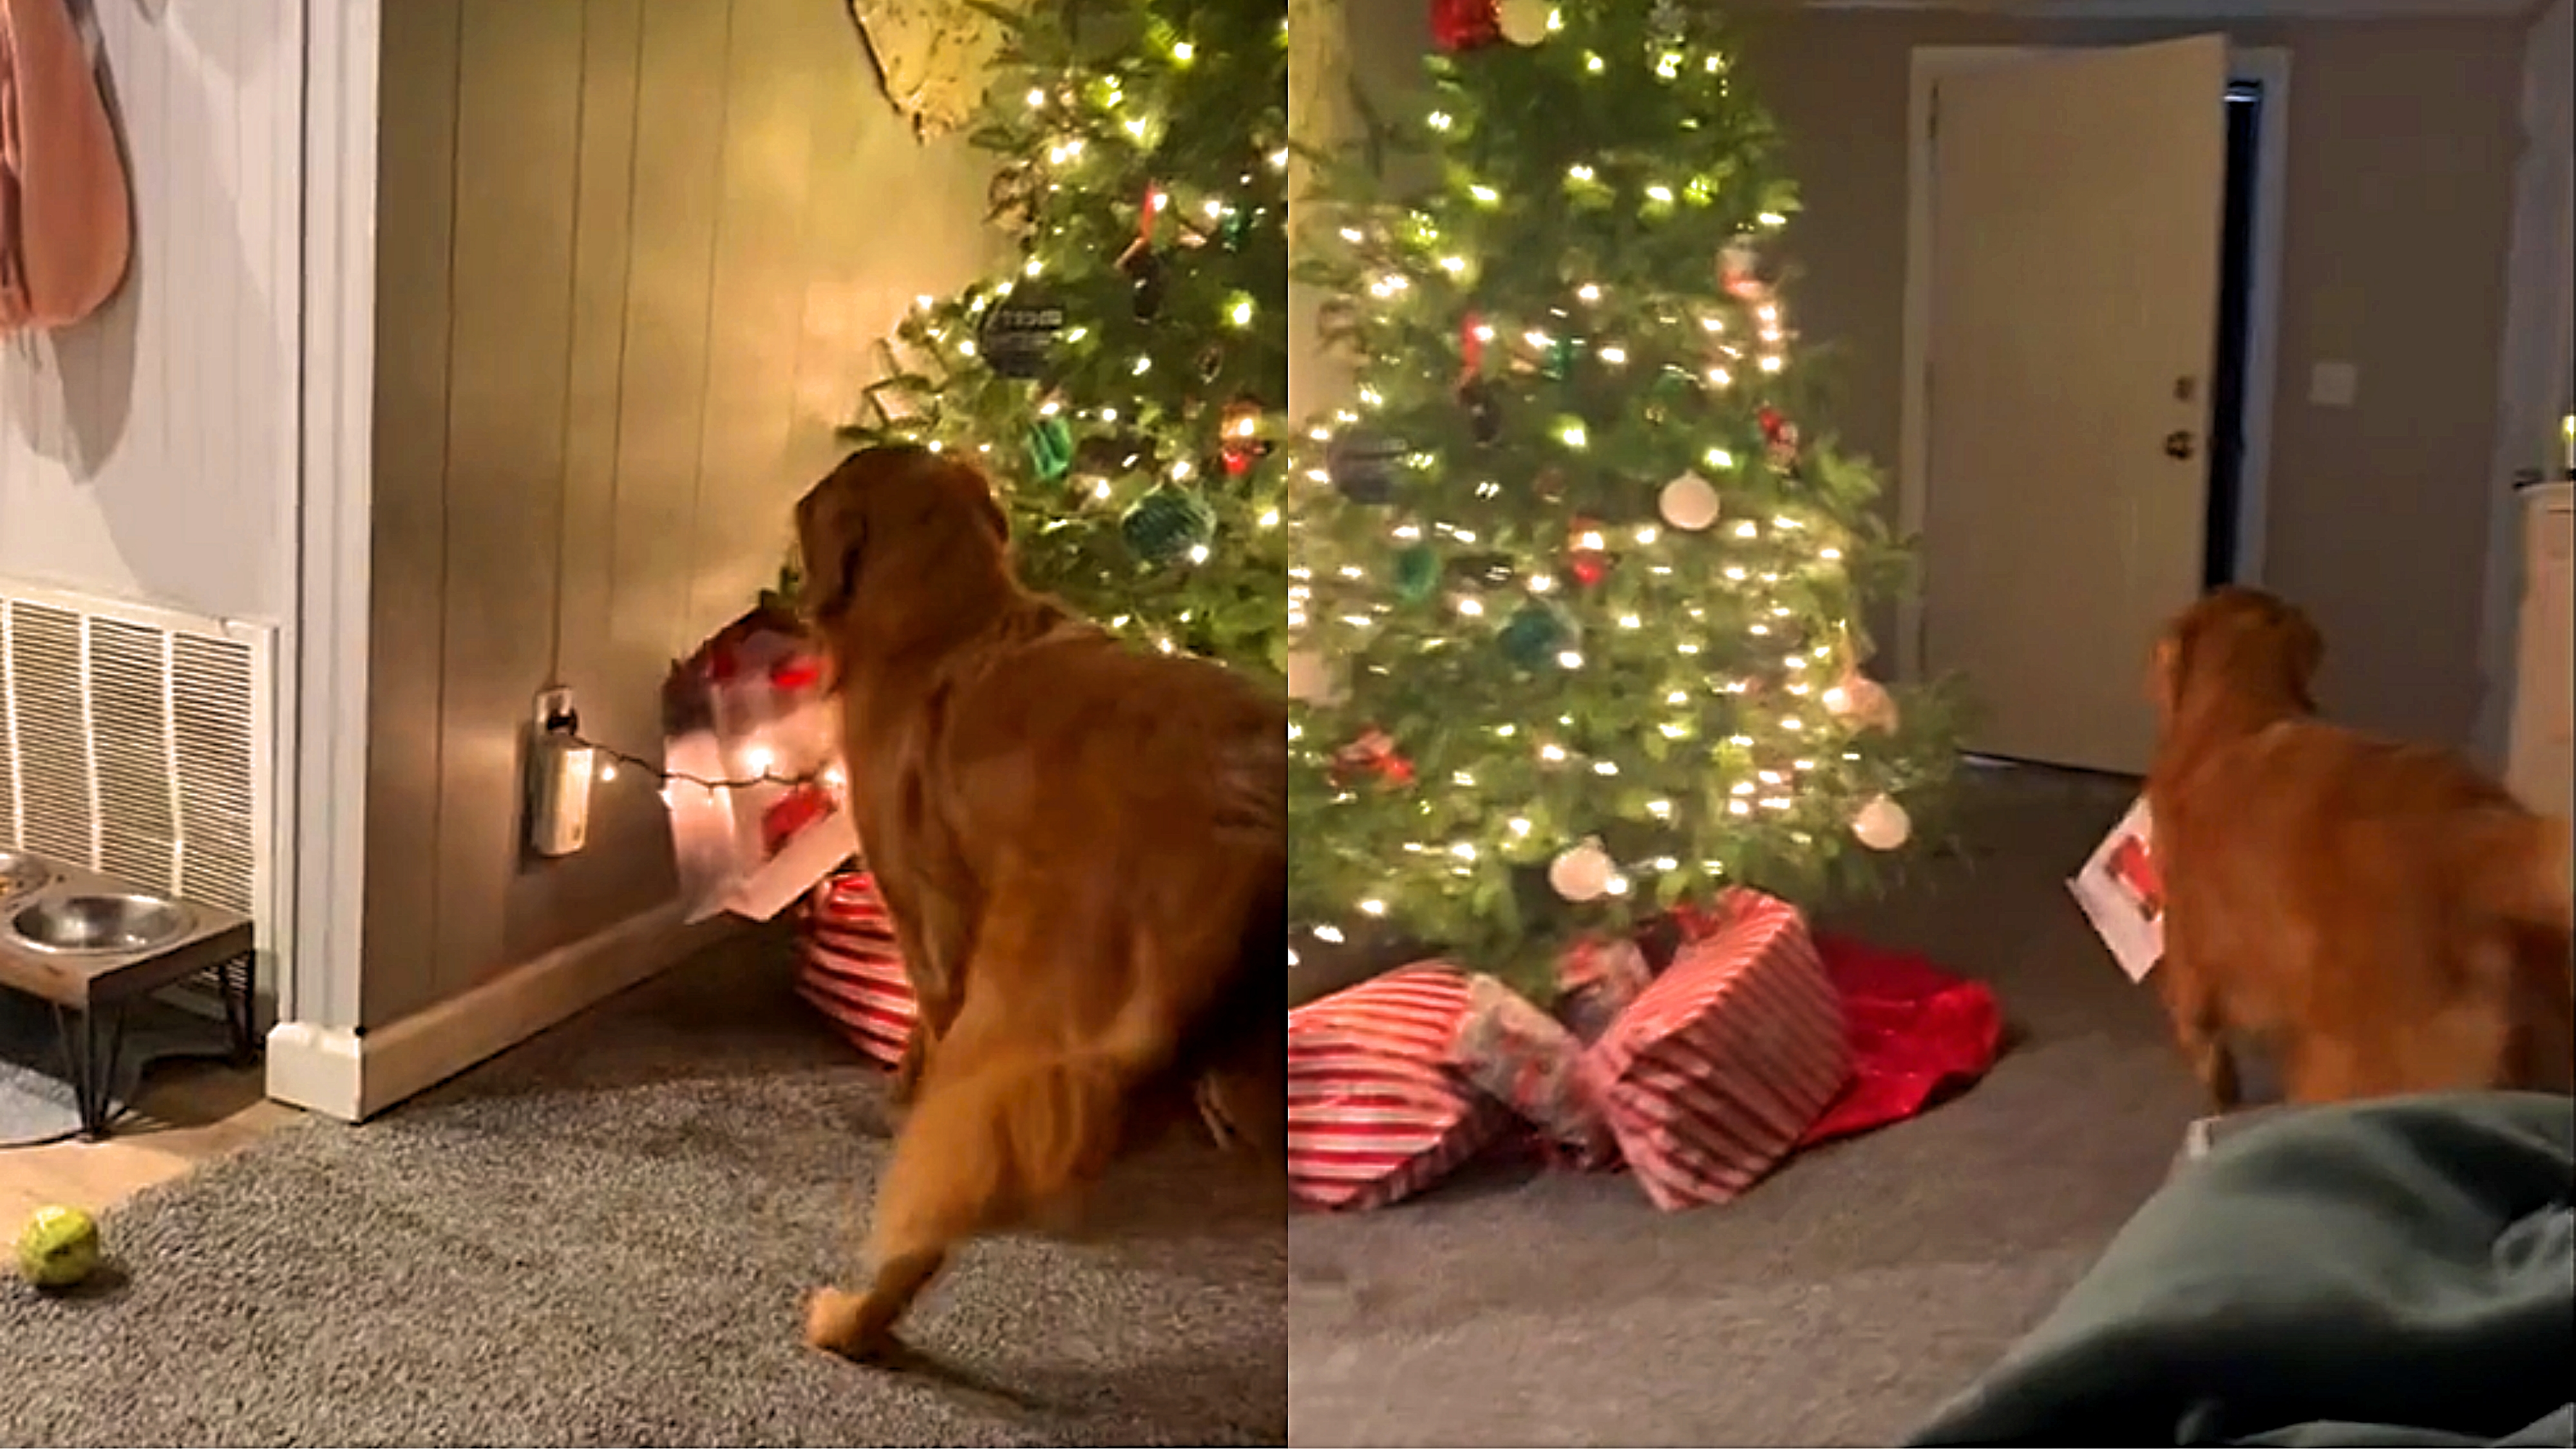 Golden retriever ansiosa rouba de baixo de árvore presente que ganharia no  Natal